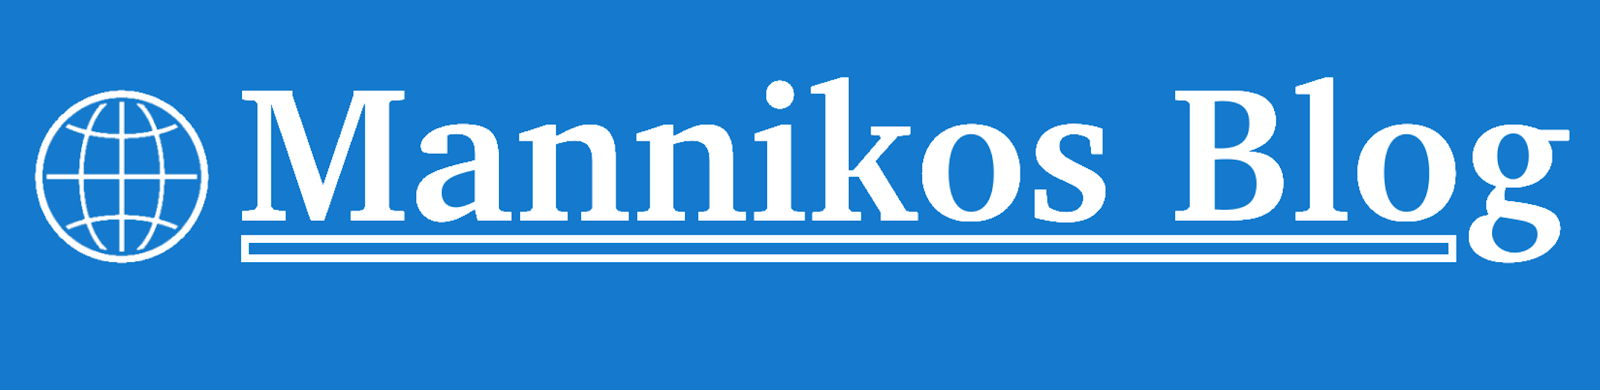 Logo - Mannikos Blog.png